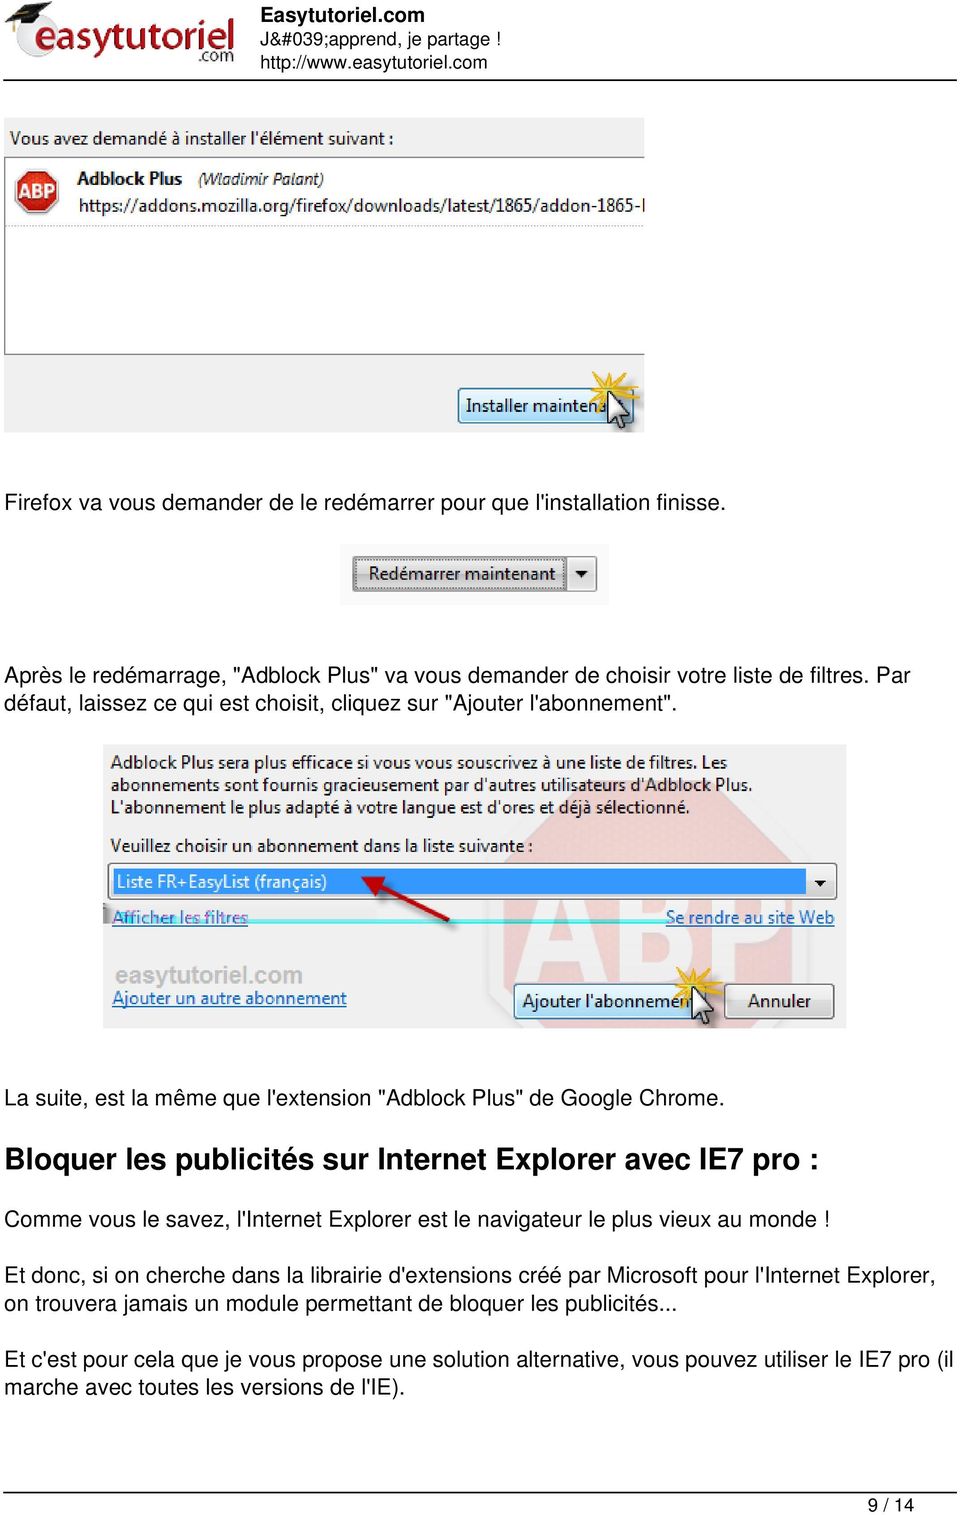 Bloquer les publicités sur Internet Explorer avec IE7 pro : Comme vous le savez, l'internet Explorer est le navigateur le plus vieux au monde!